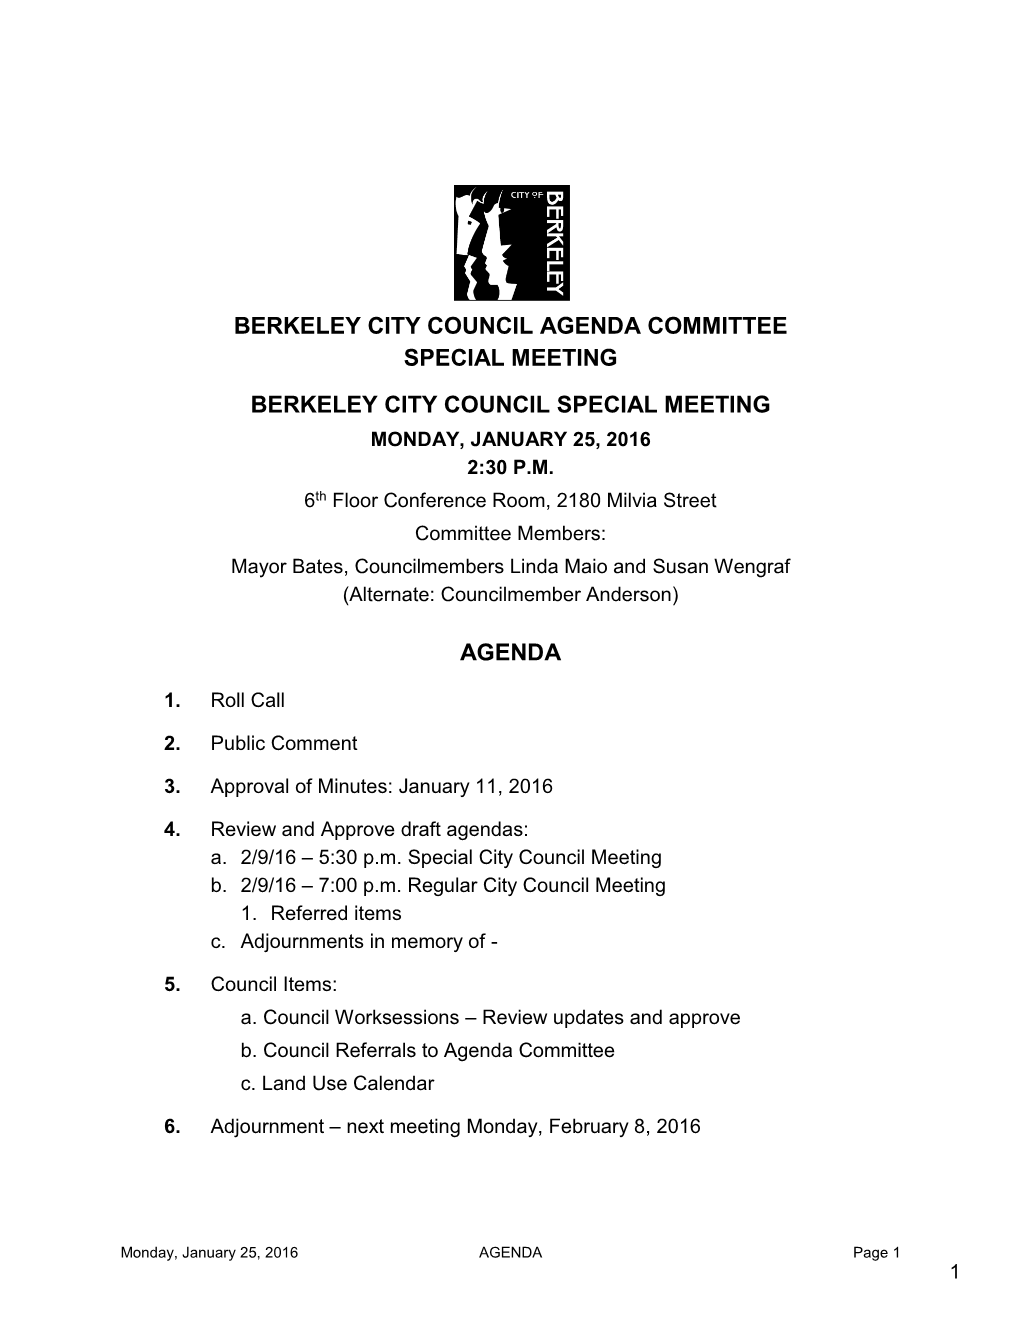 Agenda Committee 03/05/12